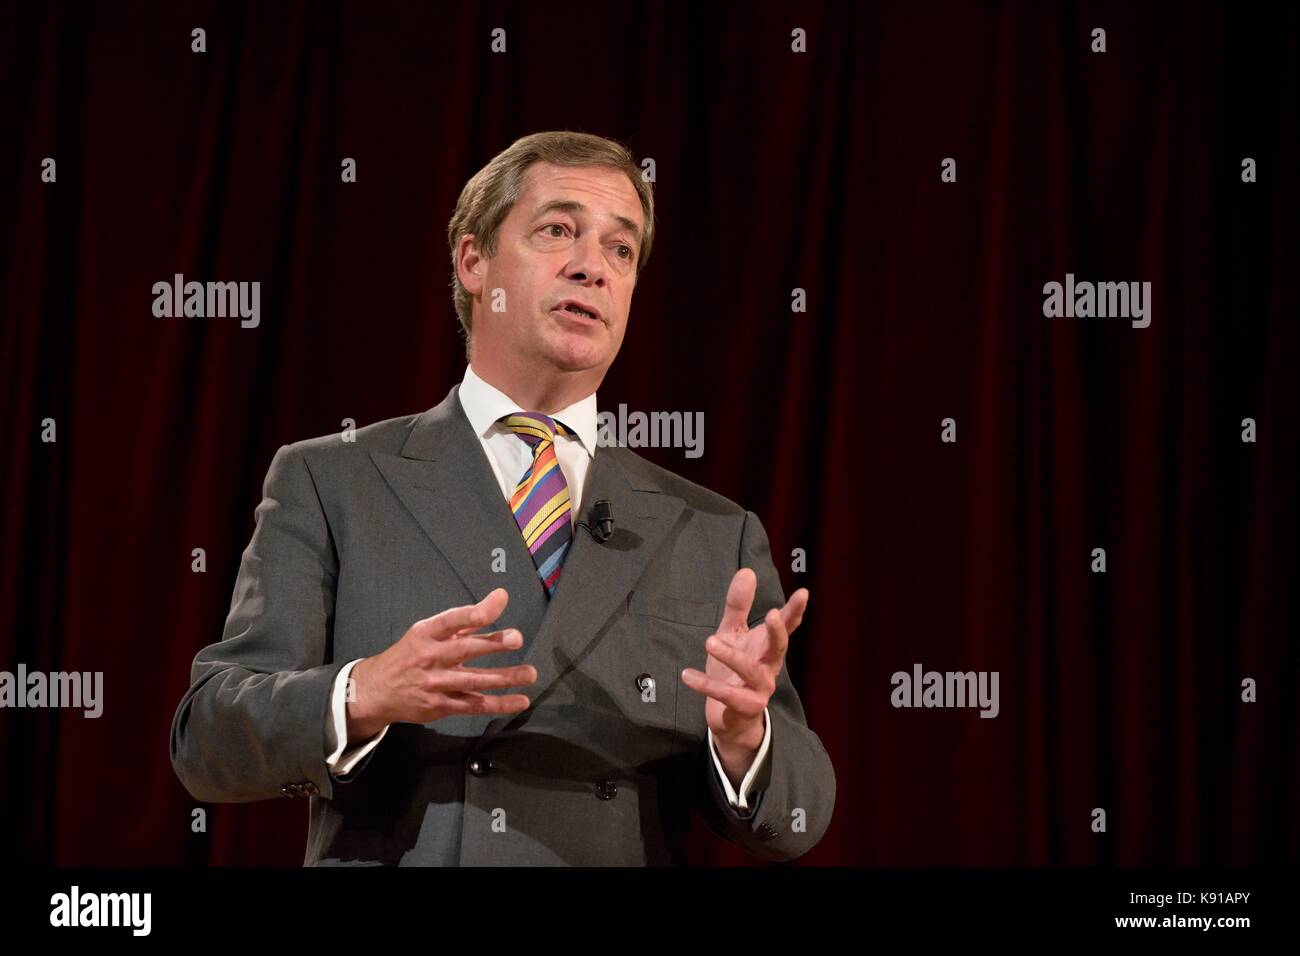 Prague, République tchèque. 21 septembre 2017. Nigel Farage, ancien chef du Parti pour l'indépendance du Royaume-Uni (UKIP) et membre du Parlement européen, prend la parole lors de discussions publiques sur l'Union européenne. Tomas Tkacik / Alamy Live News Banque D'Images